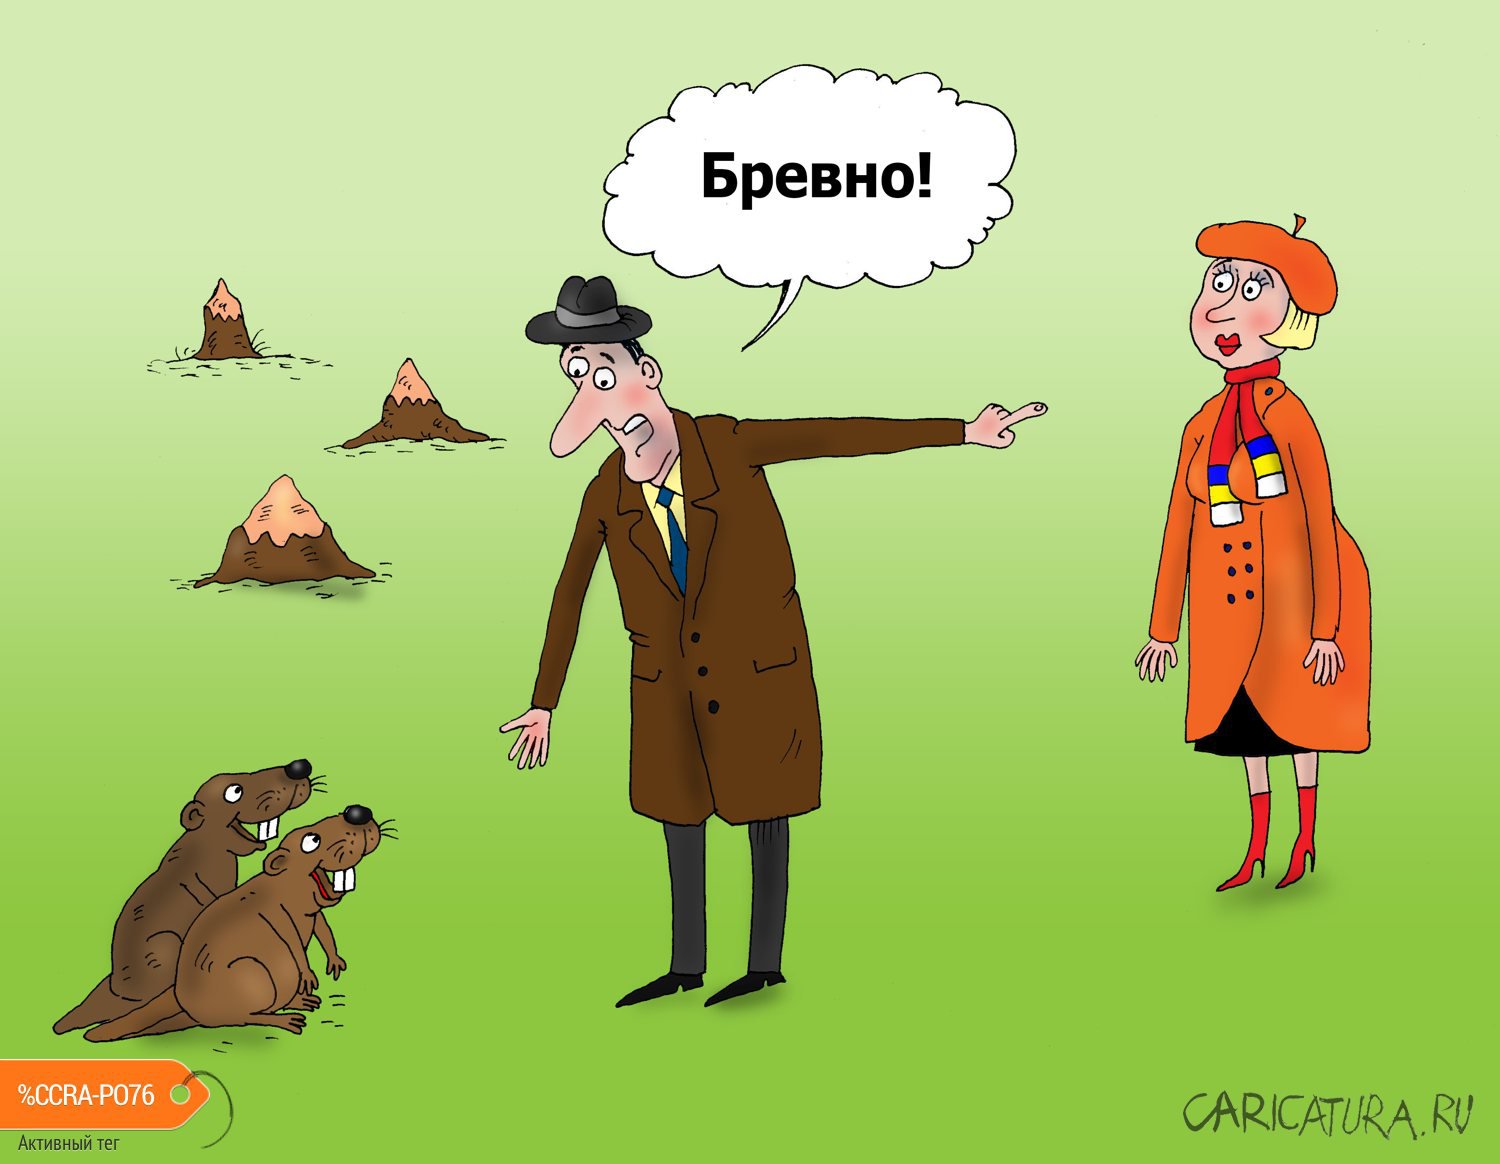 Карикатура "Бобры", Валерий Тарасенко